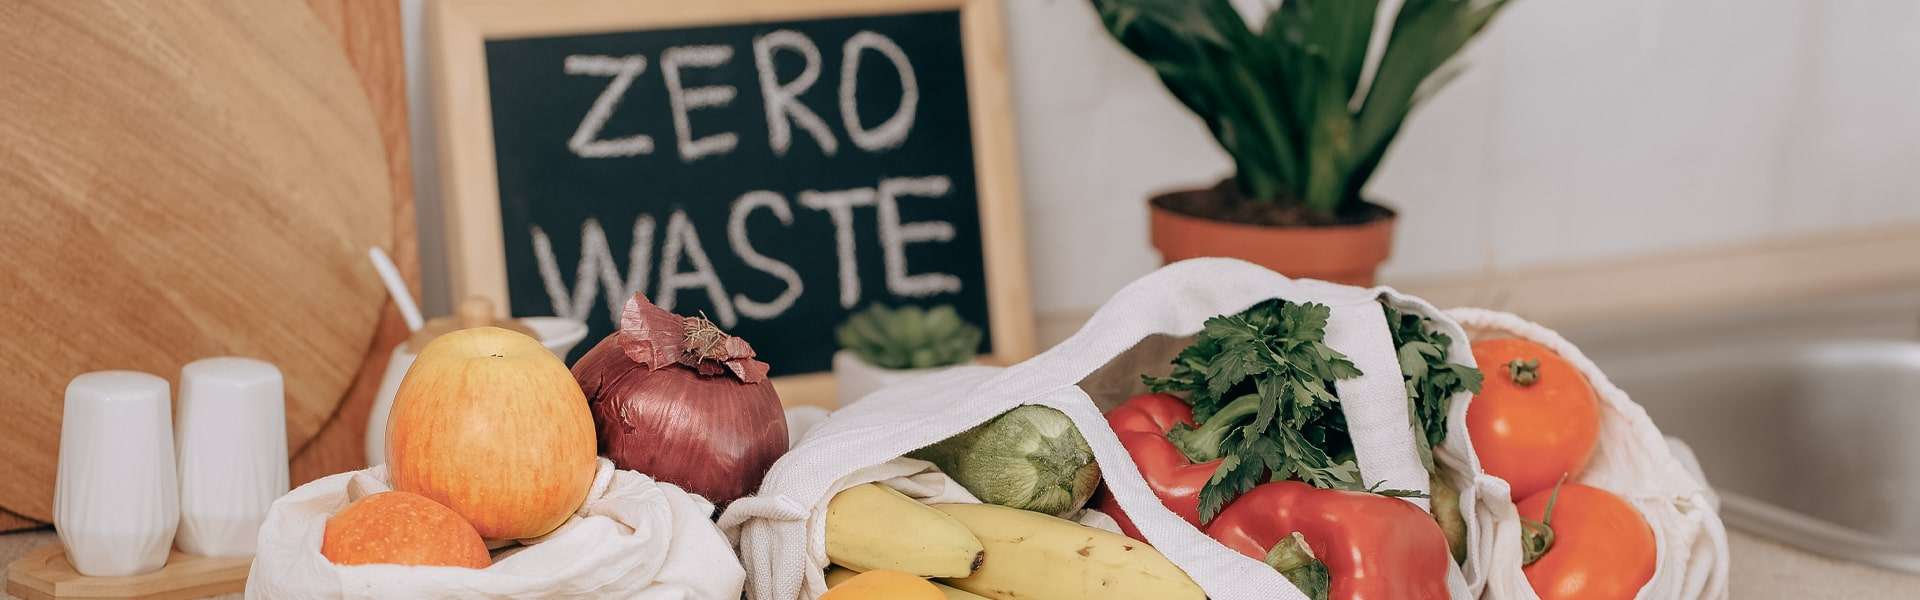 Come ridurre gli sprechi alimentari: 5 consigli pratici e funzionali